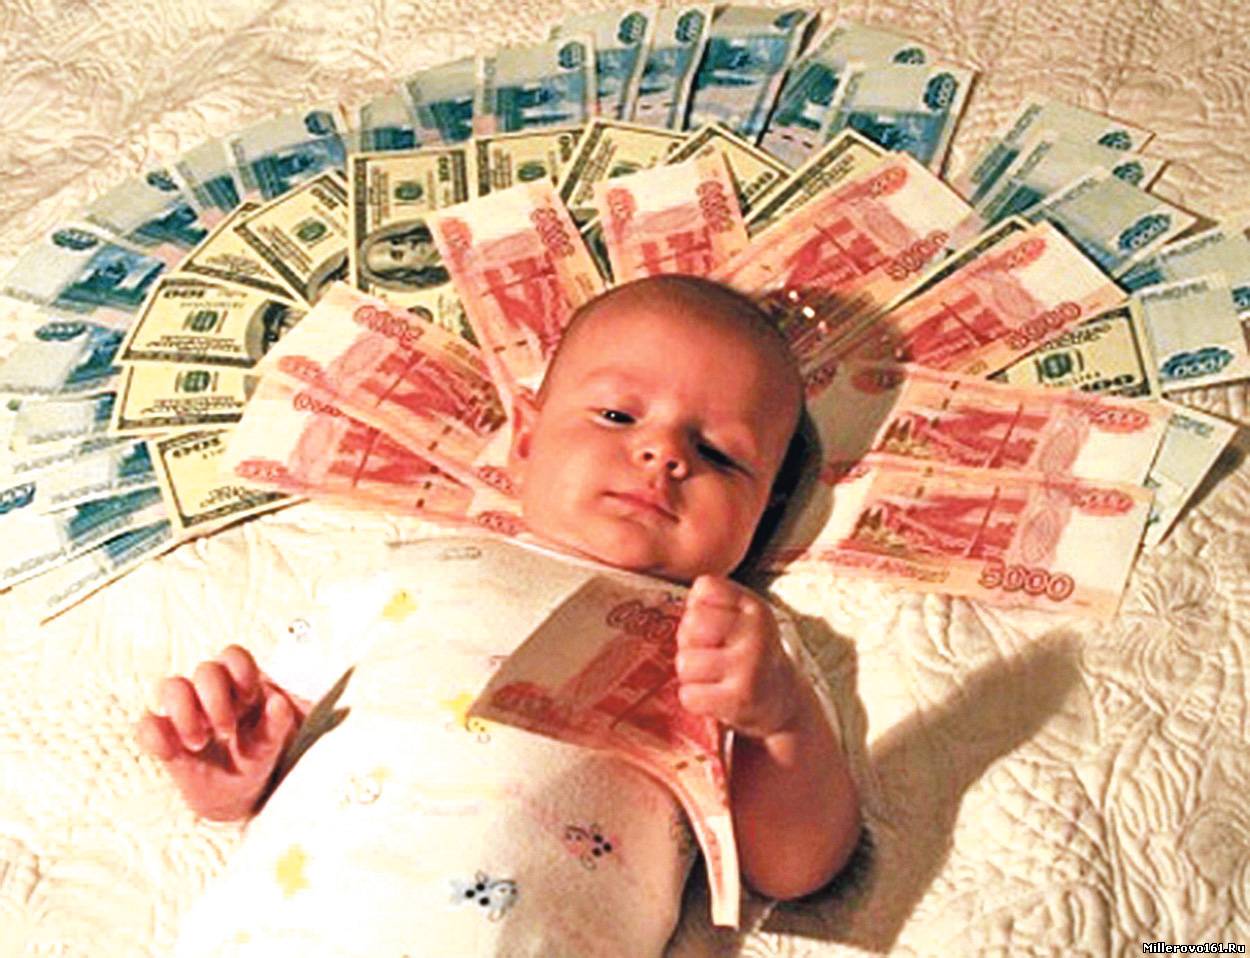 Президентскую выплату на первого ребенка получат ярославцы со среднедушевым доходом менее 15643 рубля